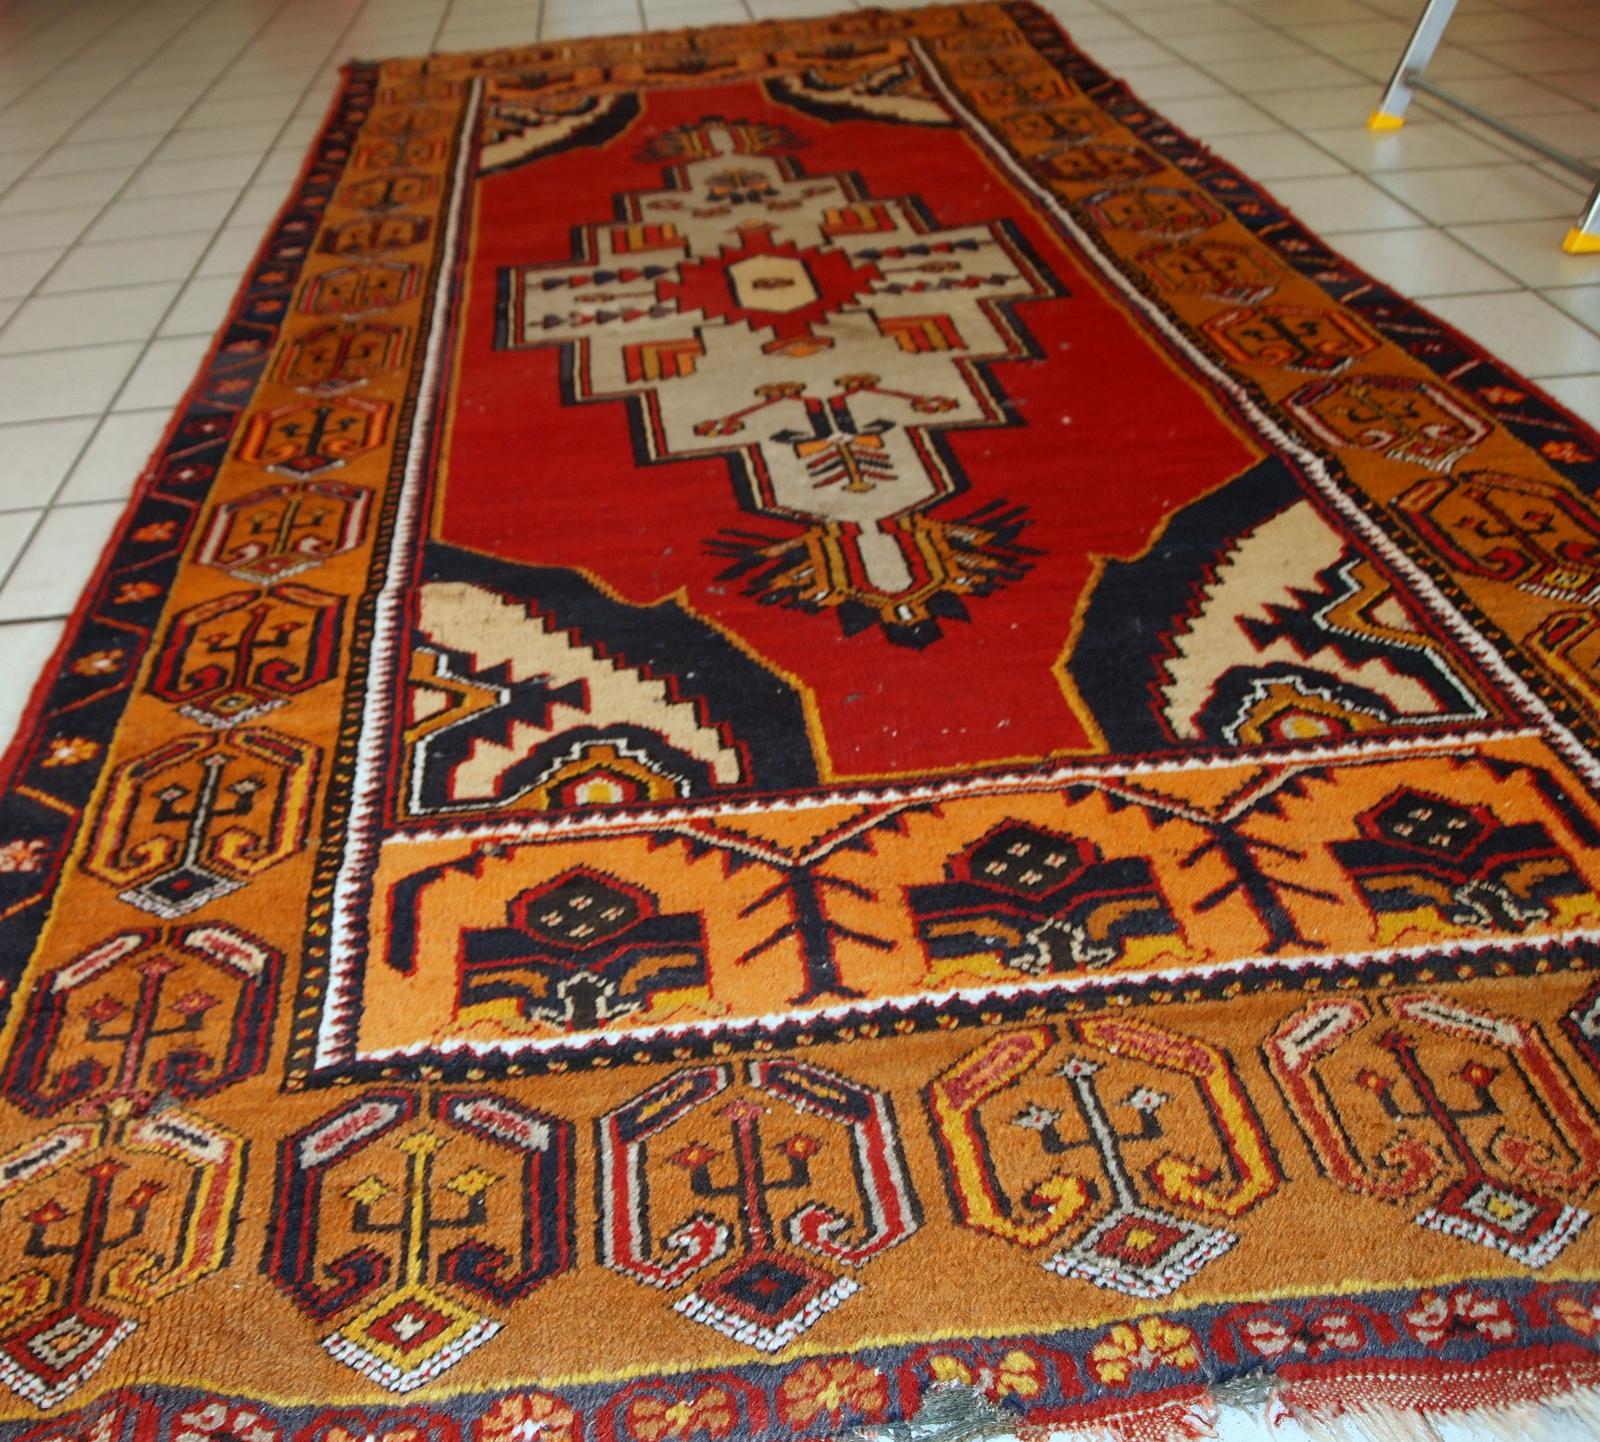 Antiker türkischer Anatolien-Teppich in beschädigtem Zustand. Der Teppich ist im traditionellen anatolischen Design in Rot, Gelb, Marineblau und Grautönen gehalten. der Teppich wurde Anfang des 20. Jahrhunderts hergestellt.

-zustand: